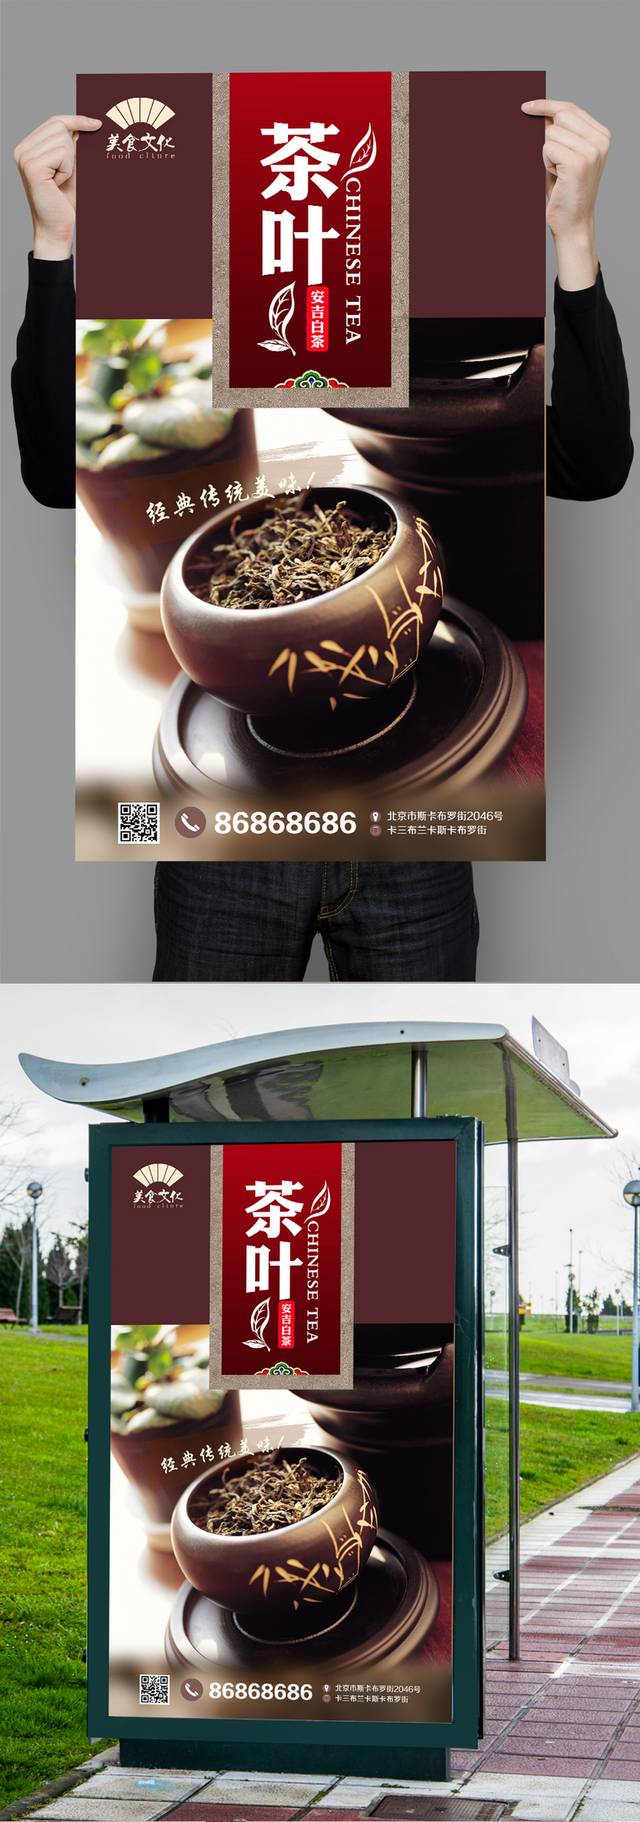 安吉白茶宣传海报设计